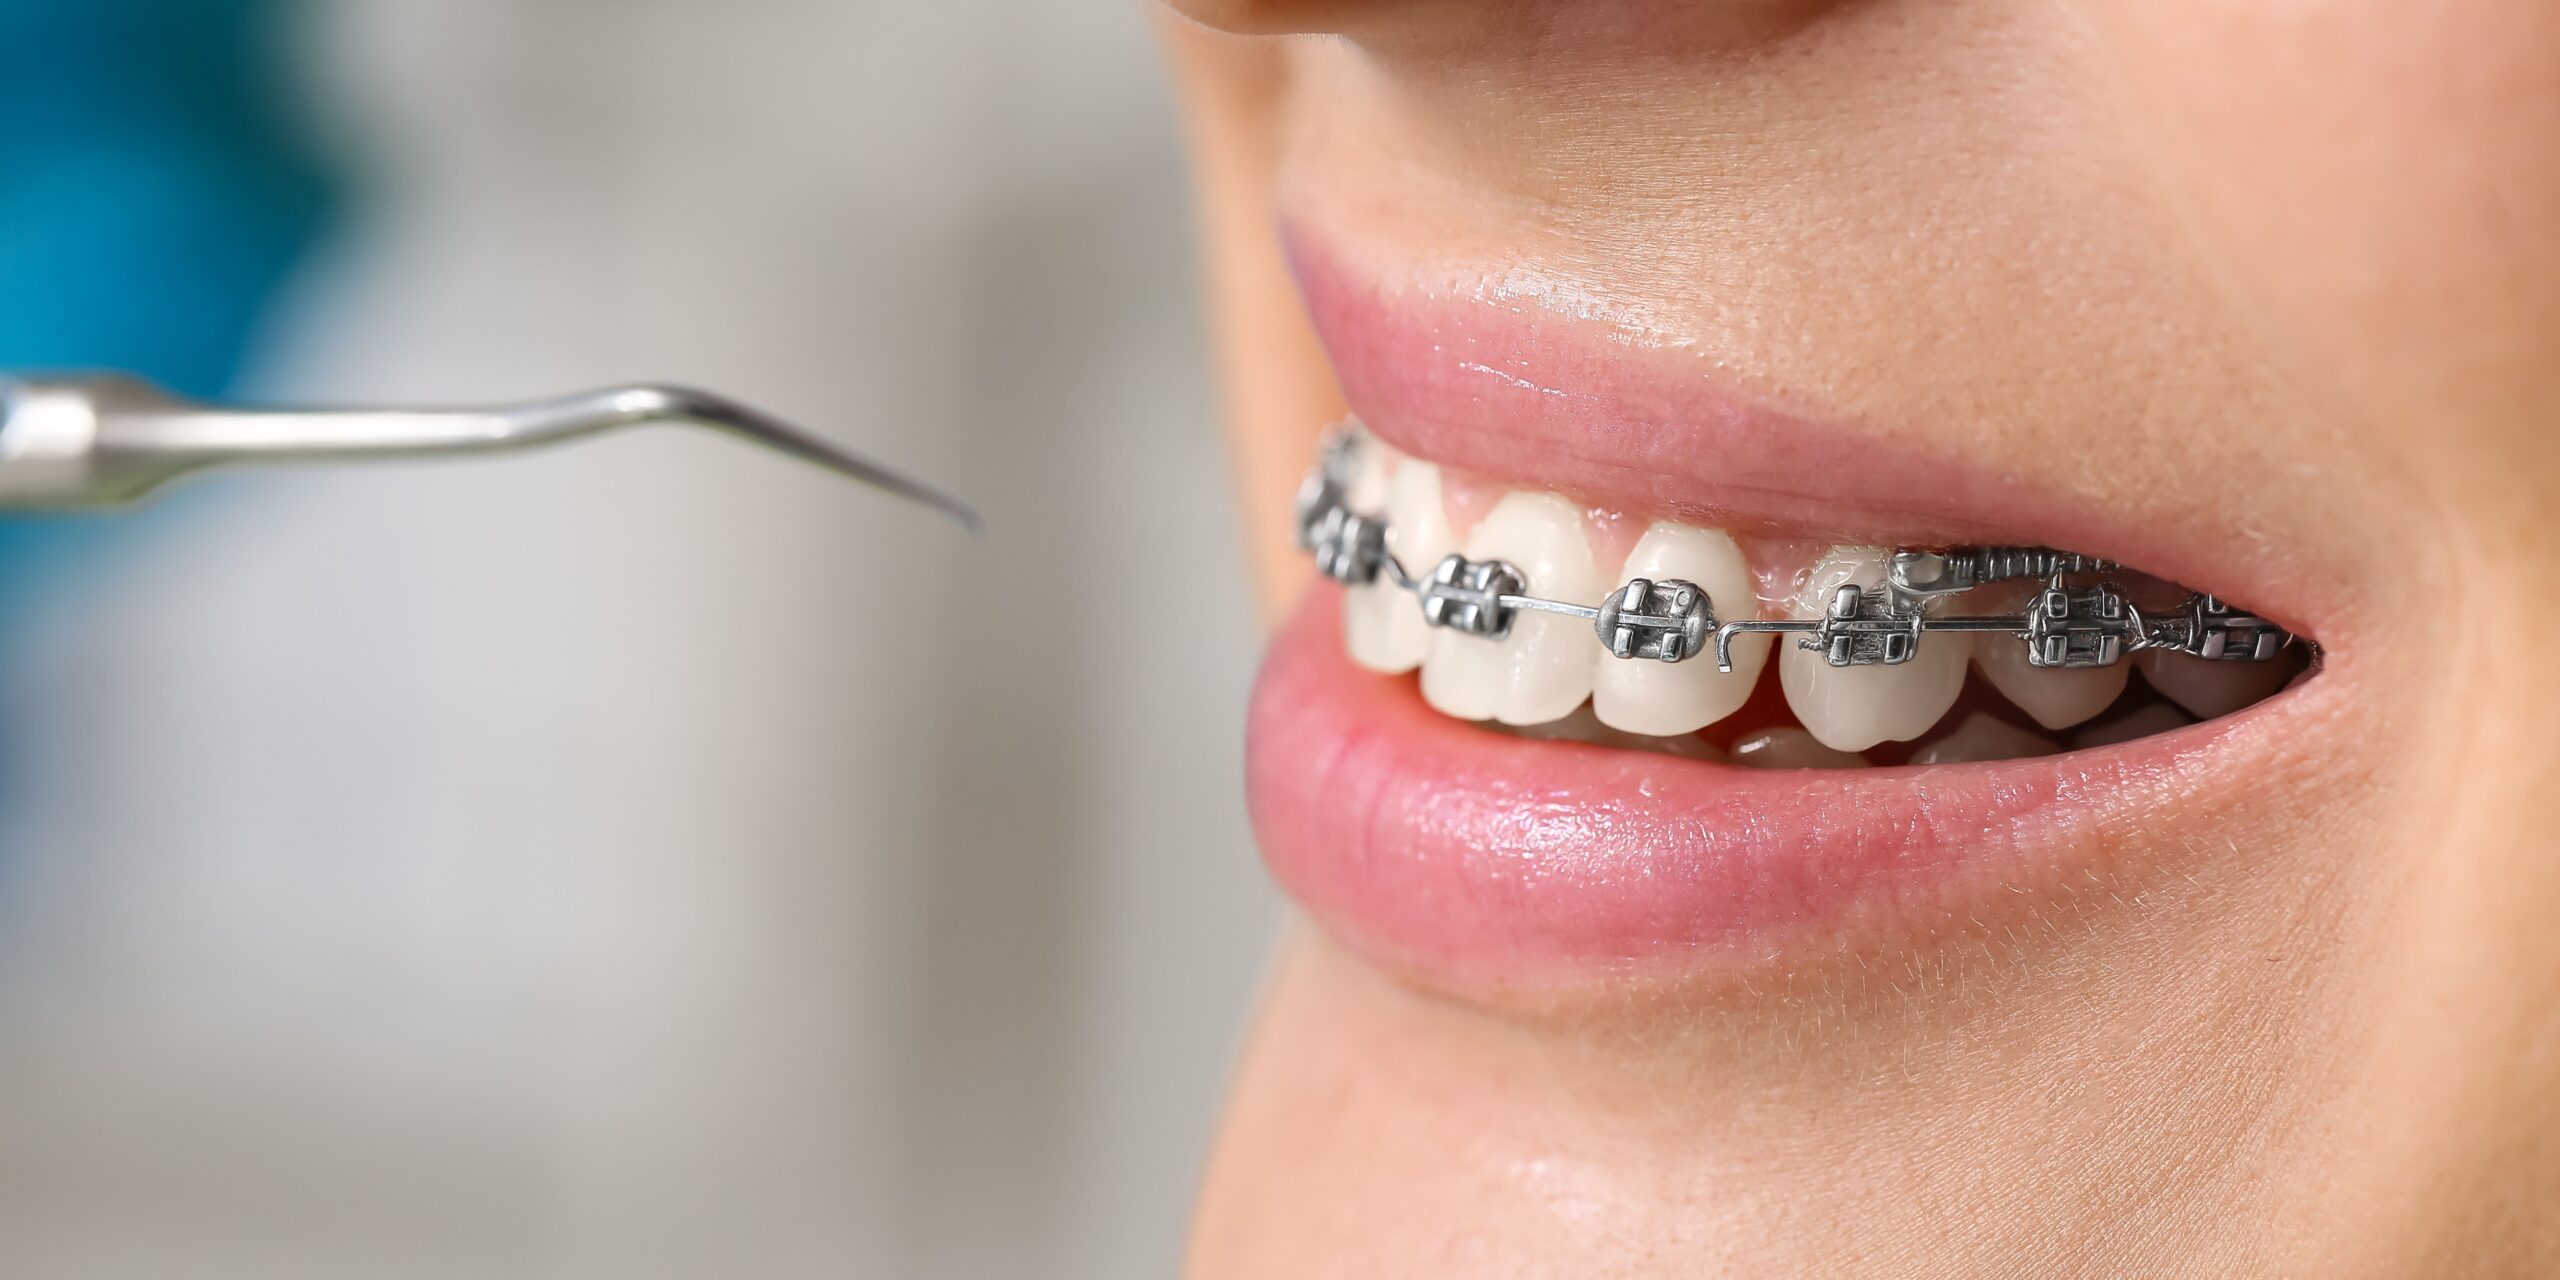 ¿Cuándo es el momento adecuado para los implantes dentales, antes o después de la ortodoncia? ¡Vamos a profundizar en el tema!